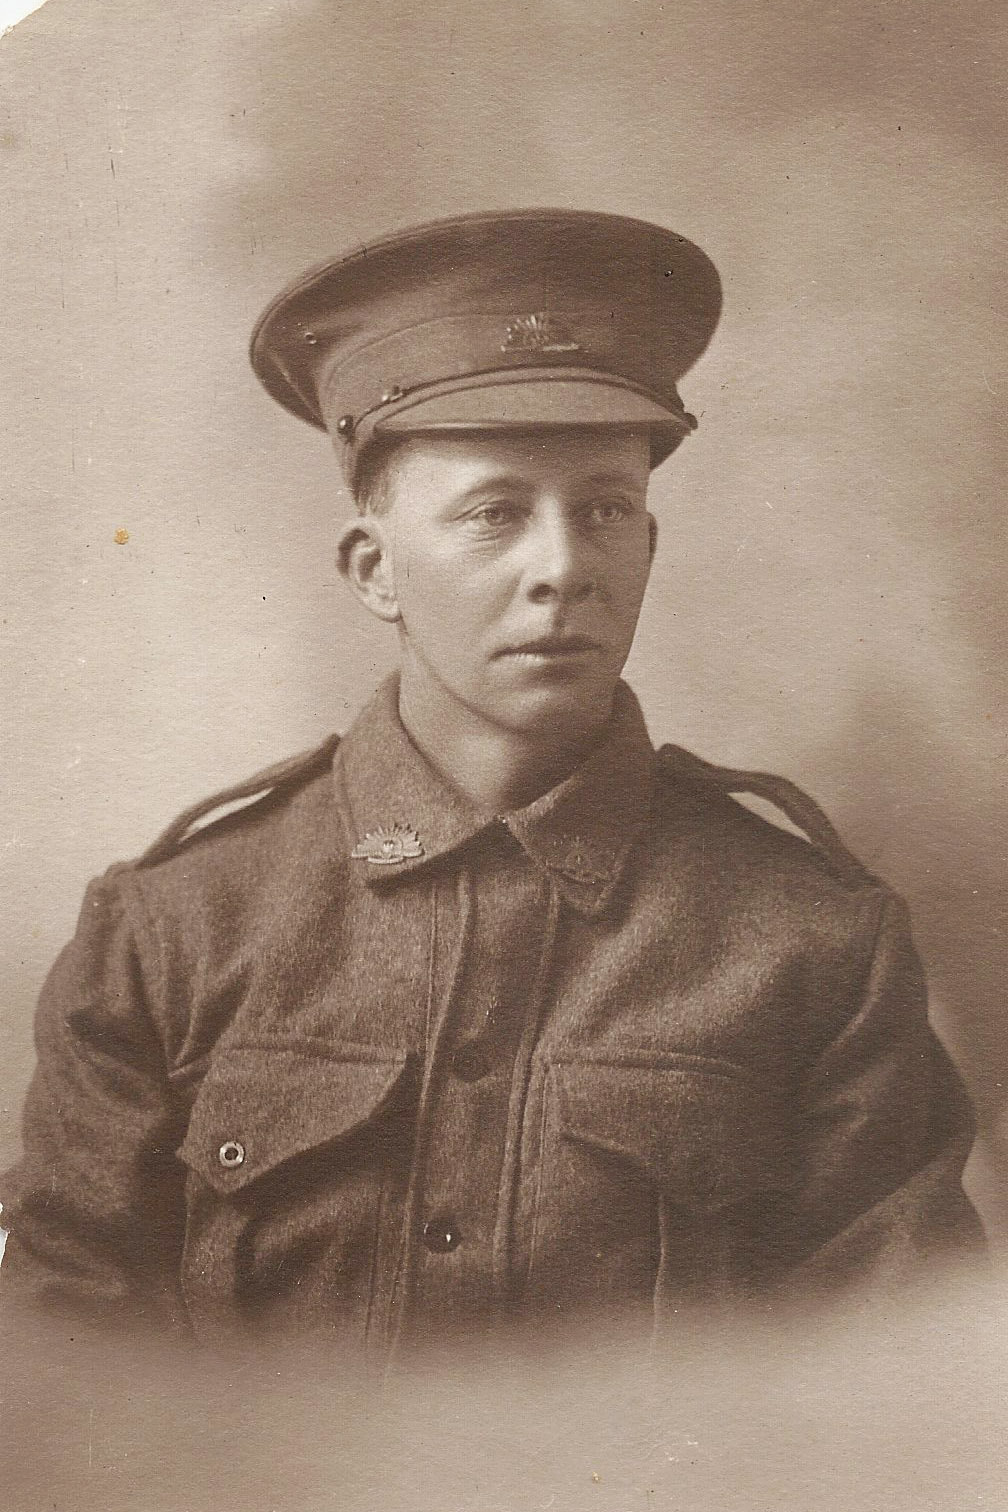 Private William Thomas Johns